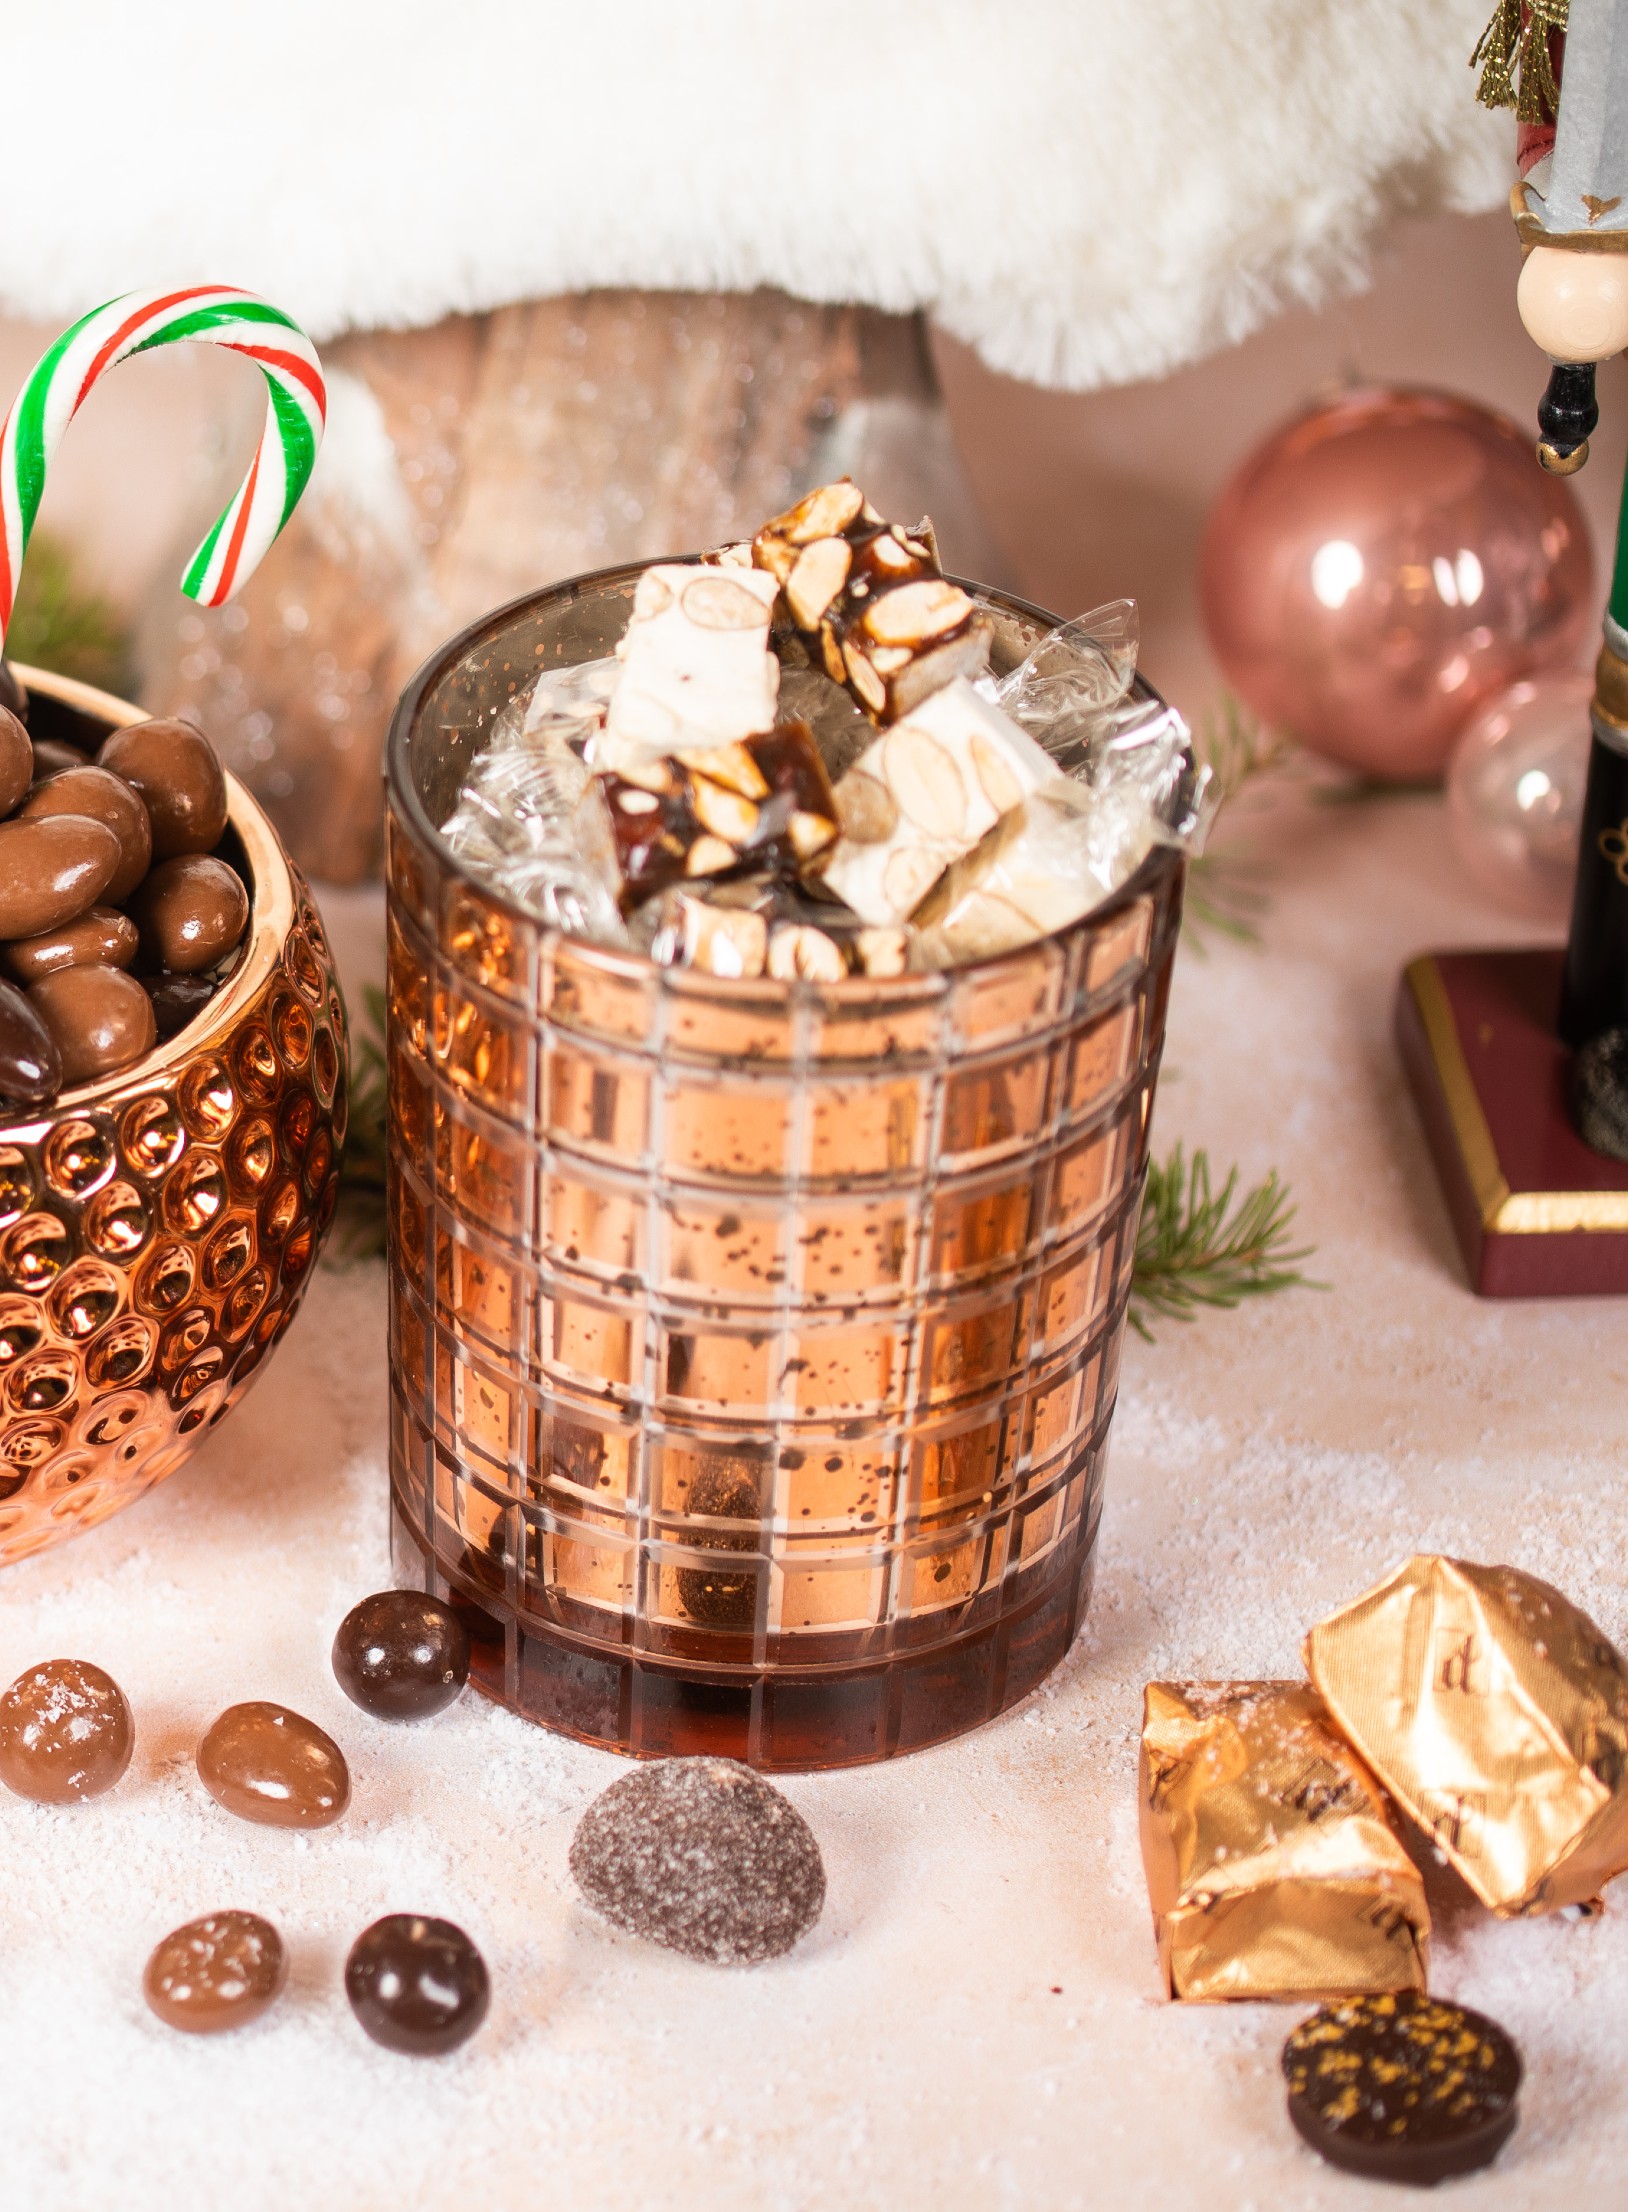 Chocolat de Noël : lequel offrir et à qui ?